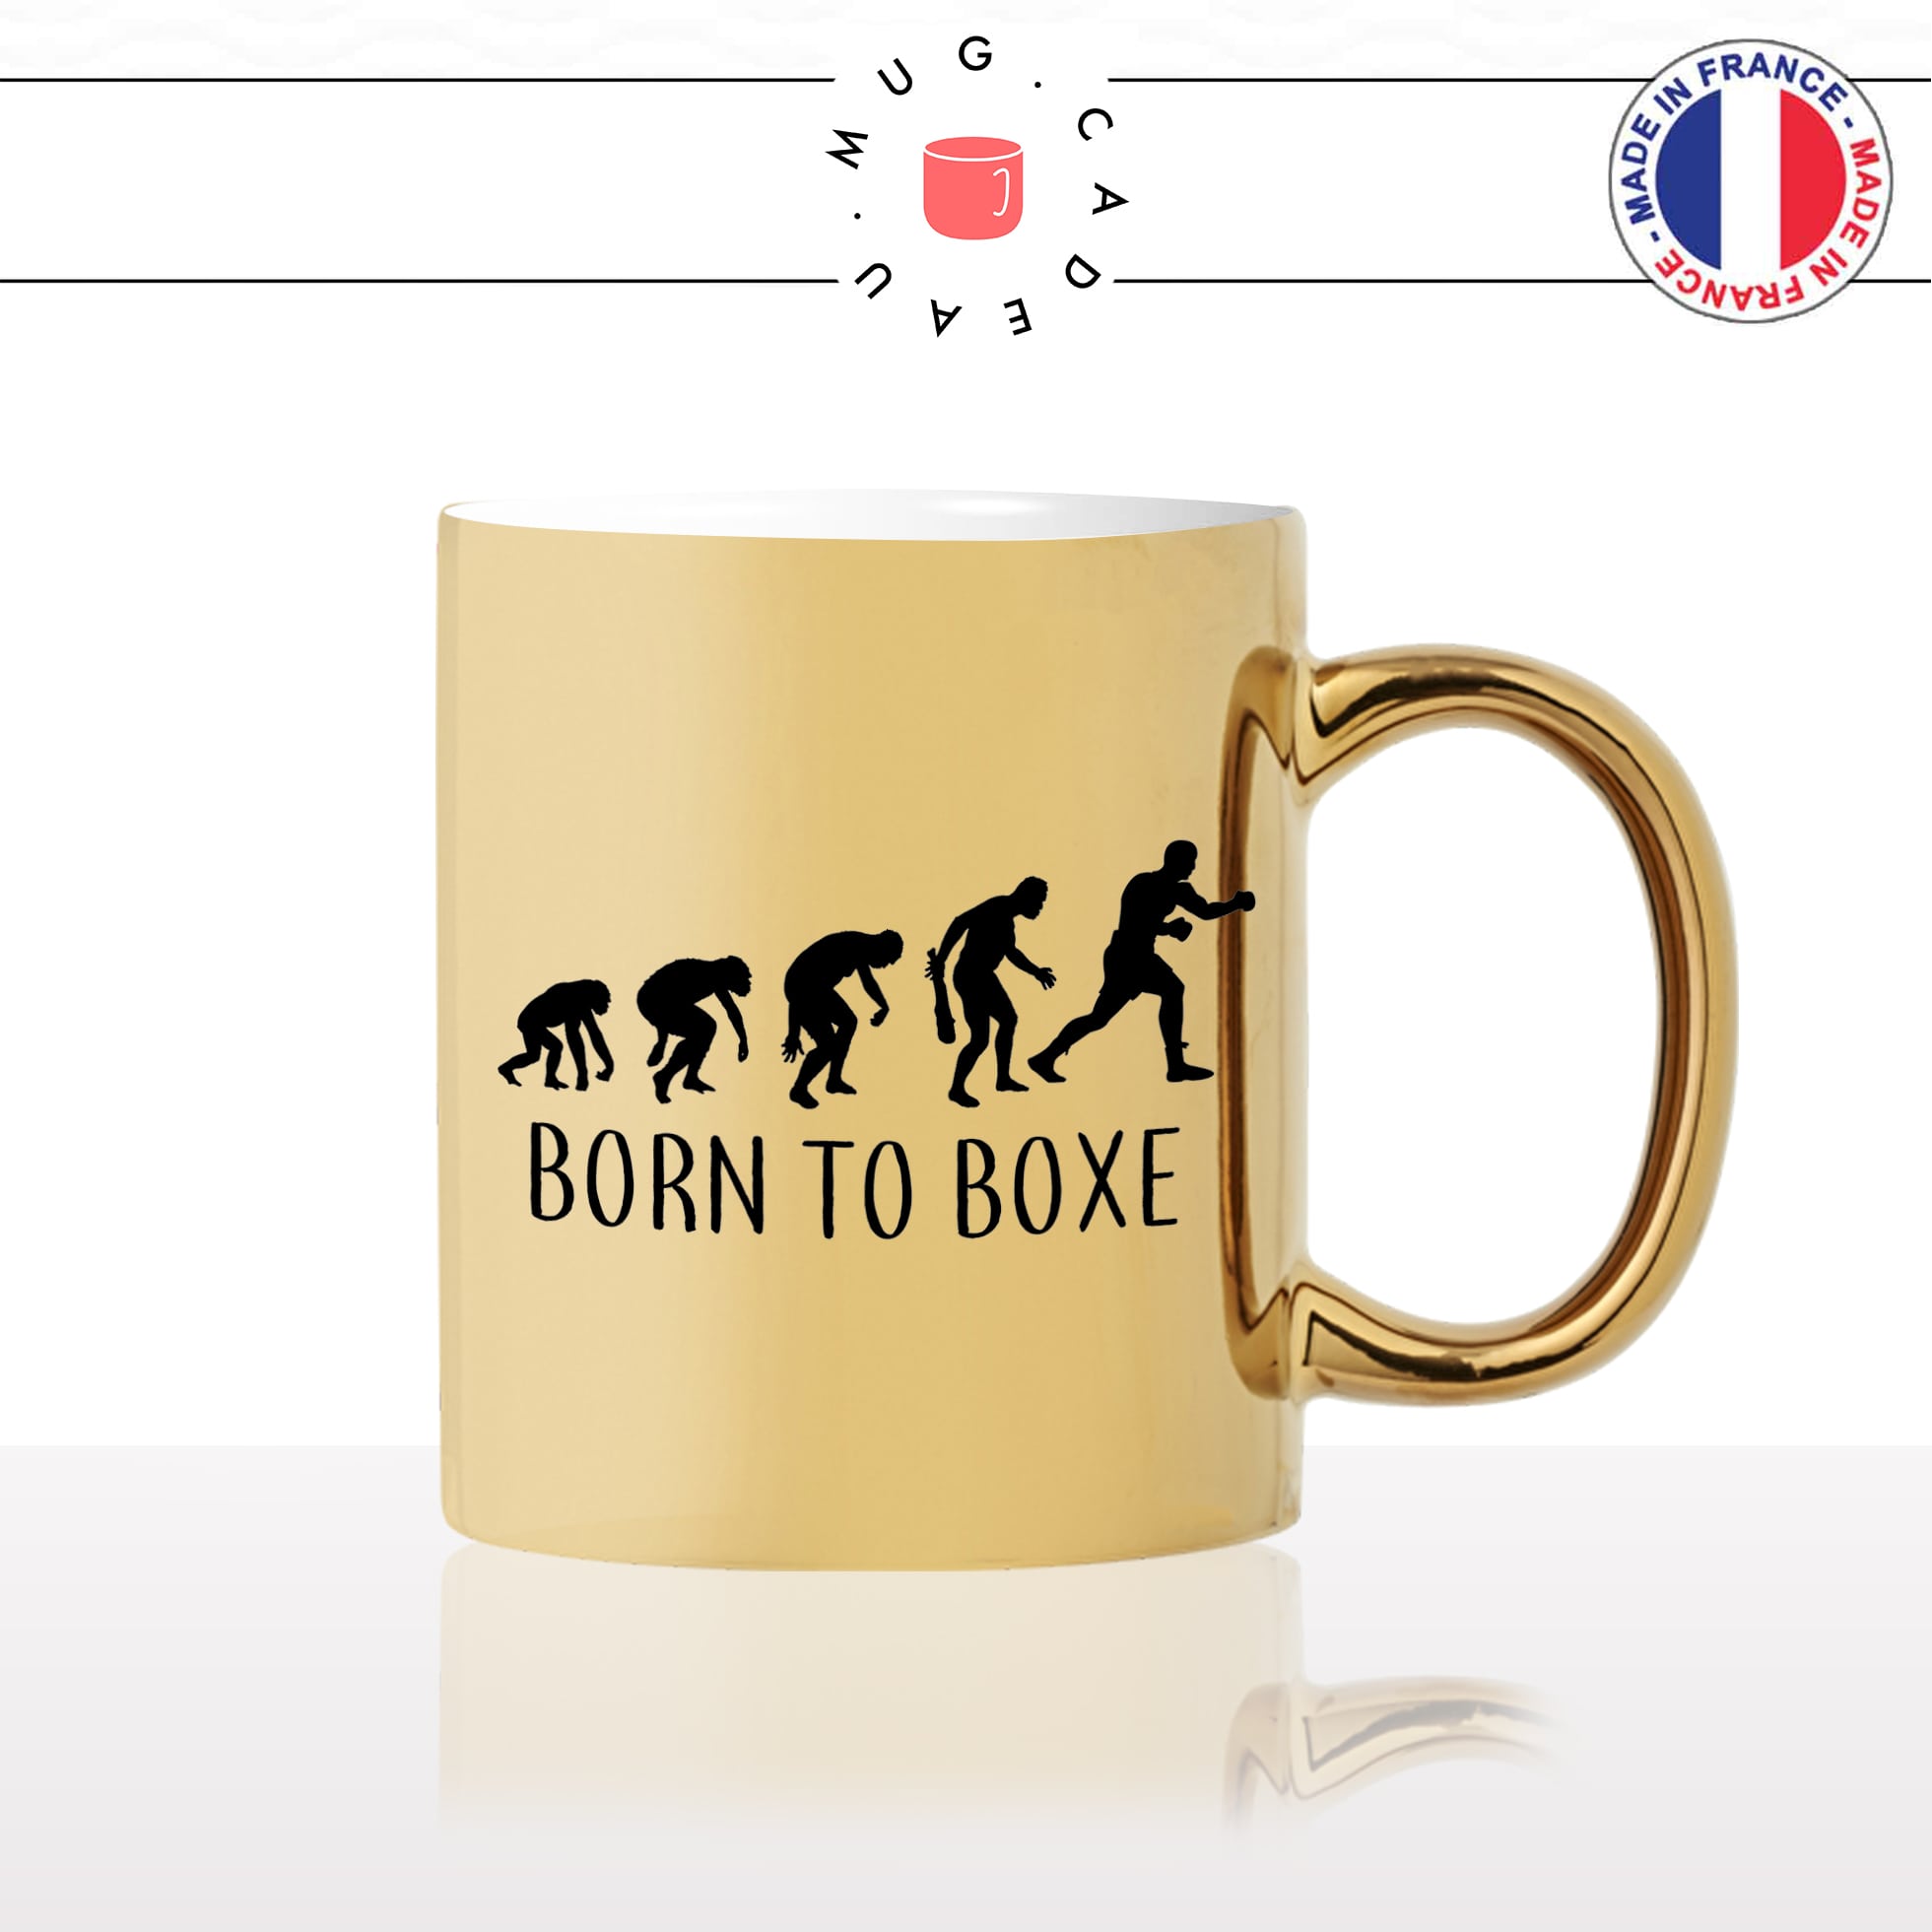 mug-tasse-or-doré-gold-born-to-boxe-boxer-combat-sport-evolution-humaine-homme-histoire-cool-idée-cadeau-fun-café-thé-personnalisé2-min